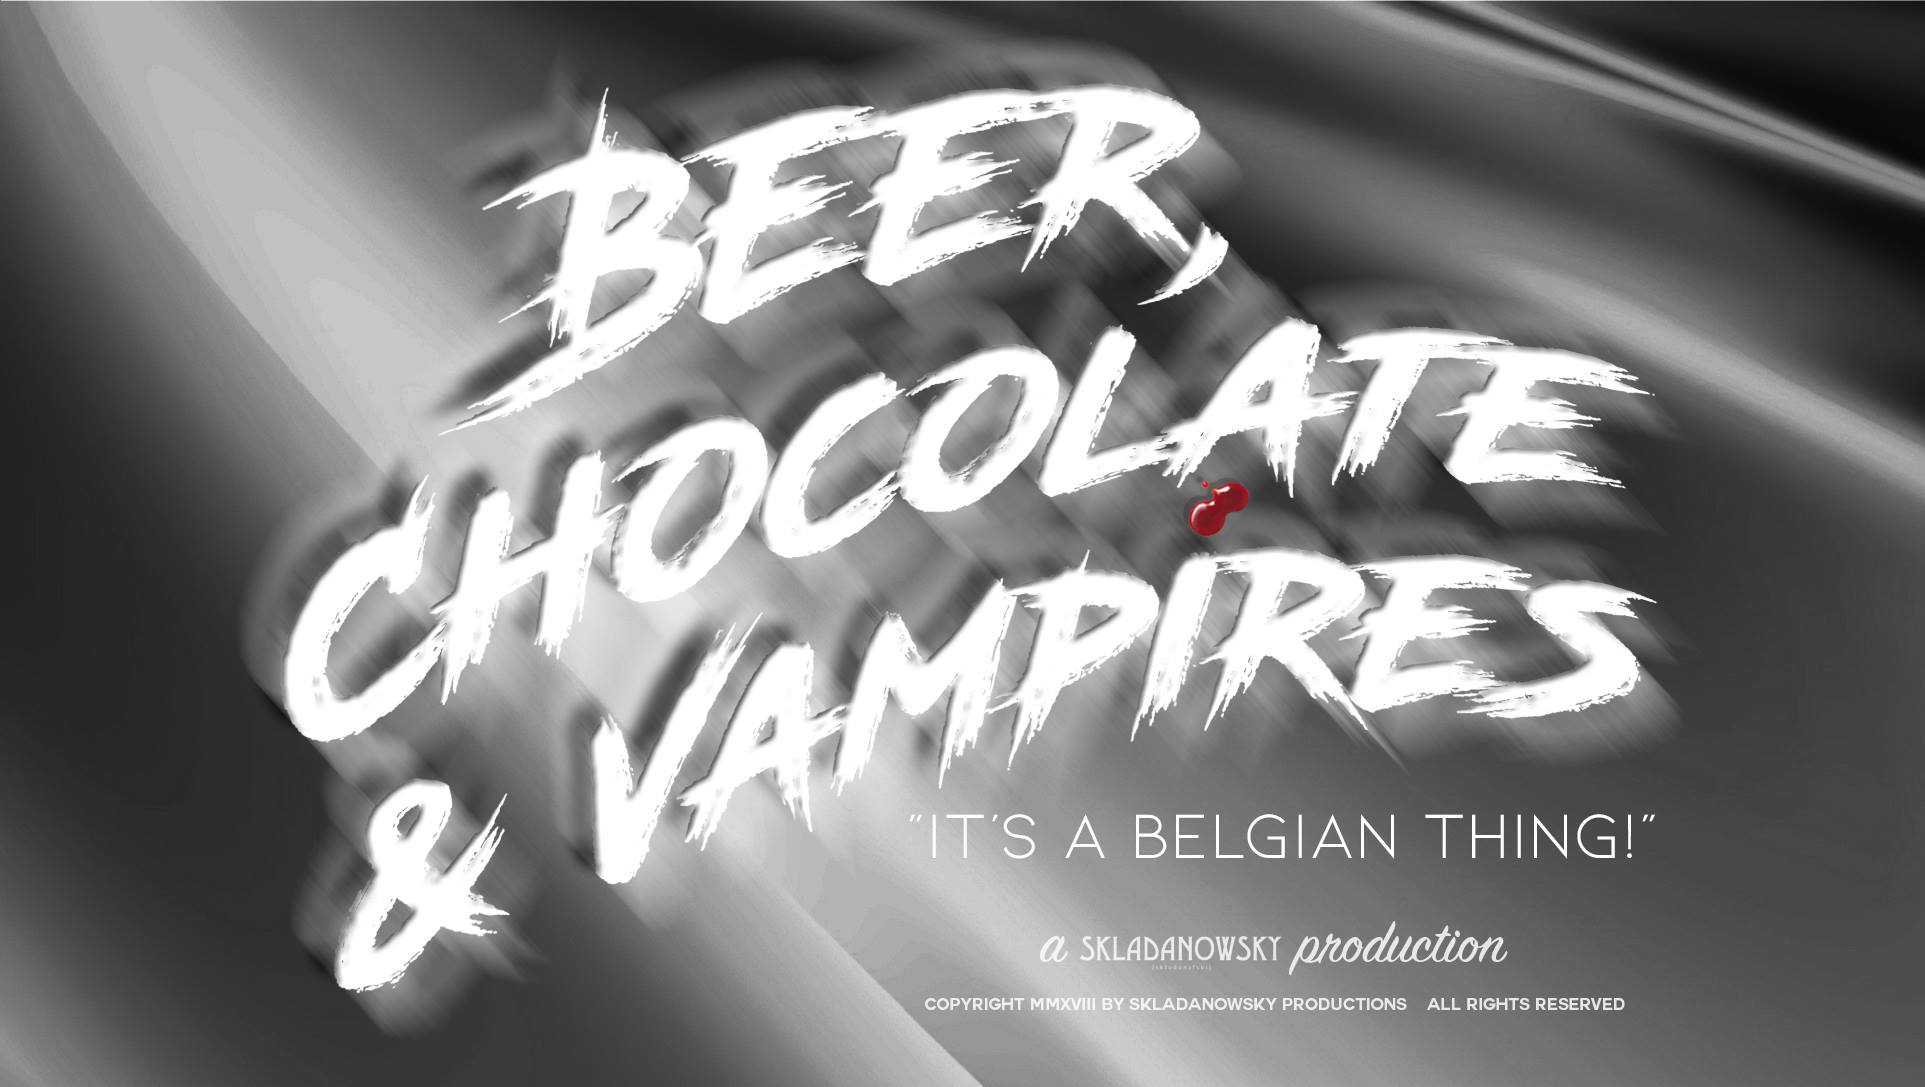 Beer, Chocolate & Vampires